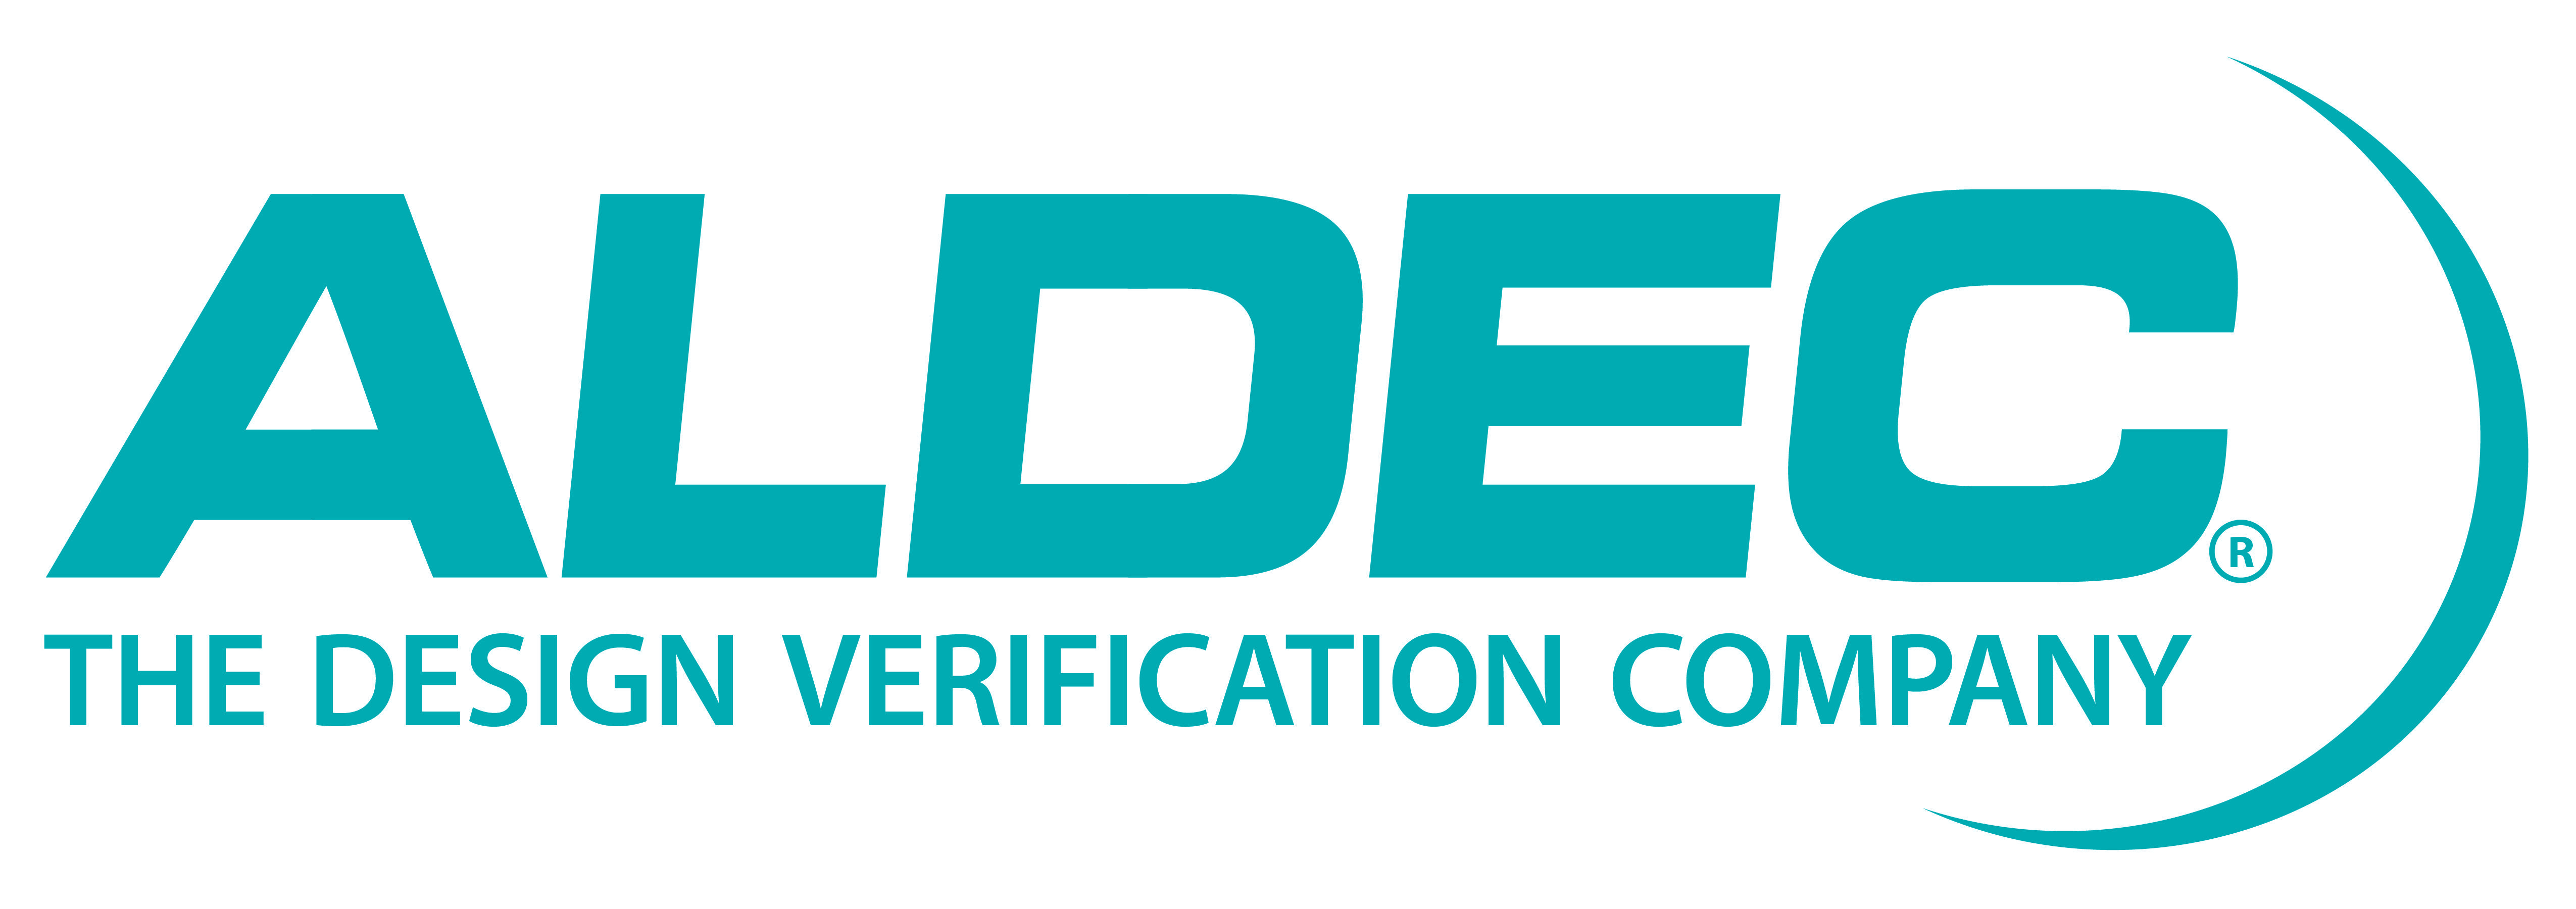 Blue Corporate Logo - Logos - Company - Aldec